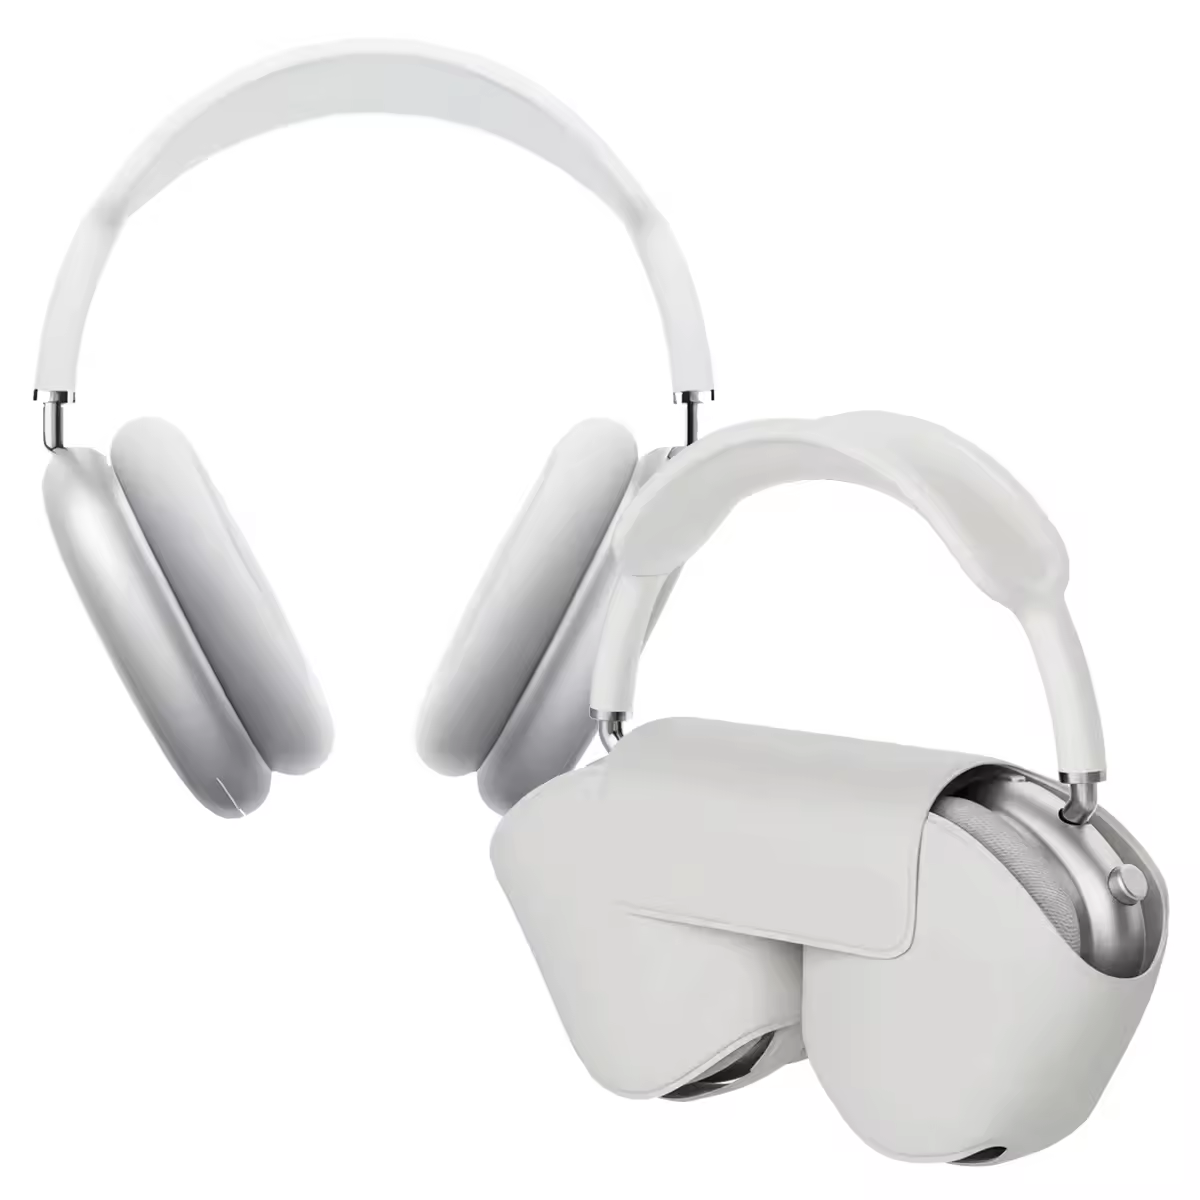 Anker-auriculares inalámbricos Q20i soundcore, cascos híbridos con